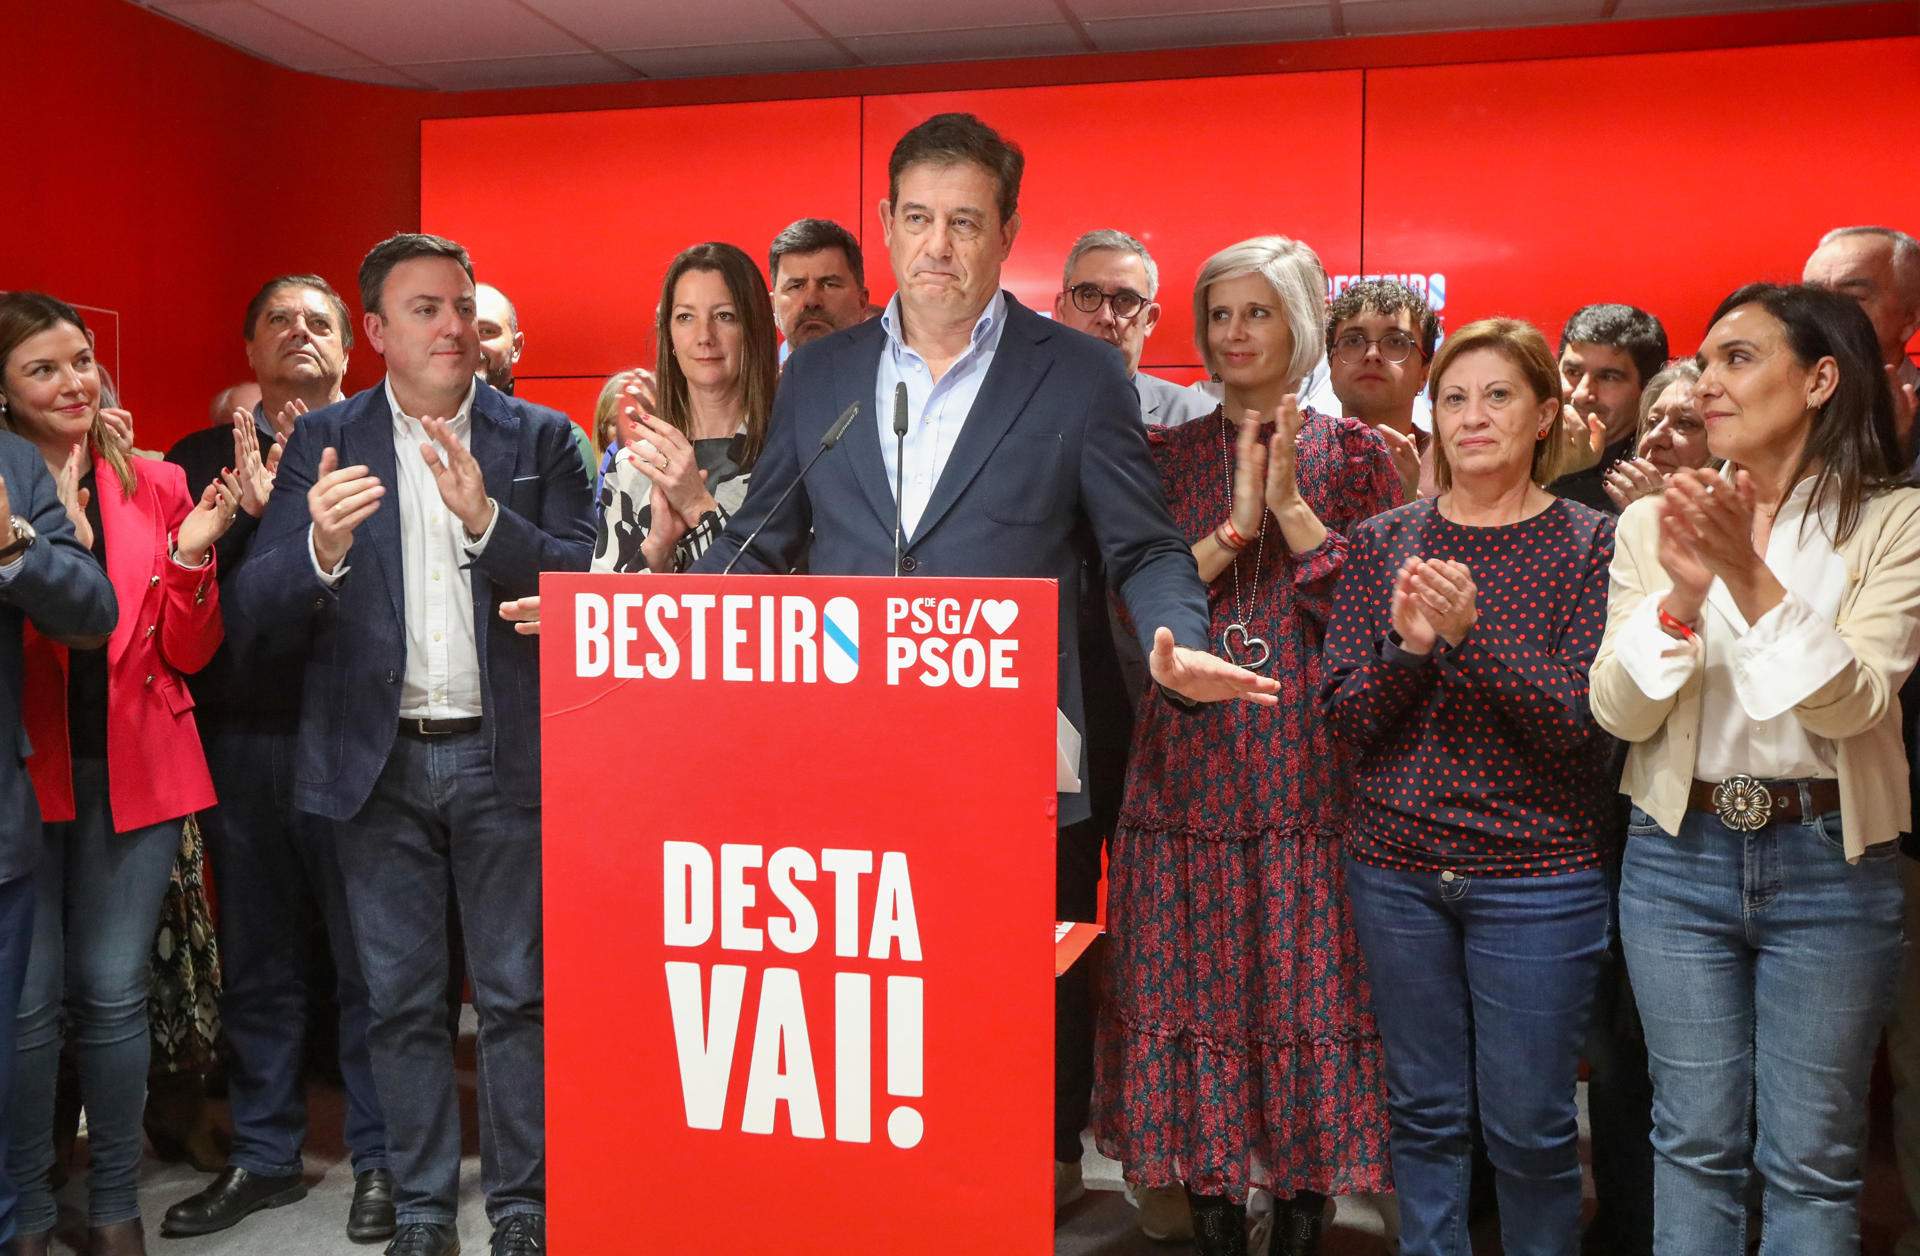 Els socialistes gallecs toquen fons amb el pitjor resultat de la seva història a costa del BNG